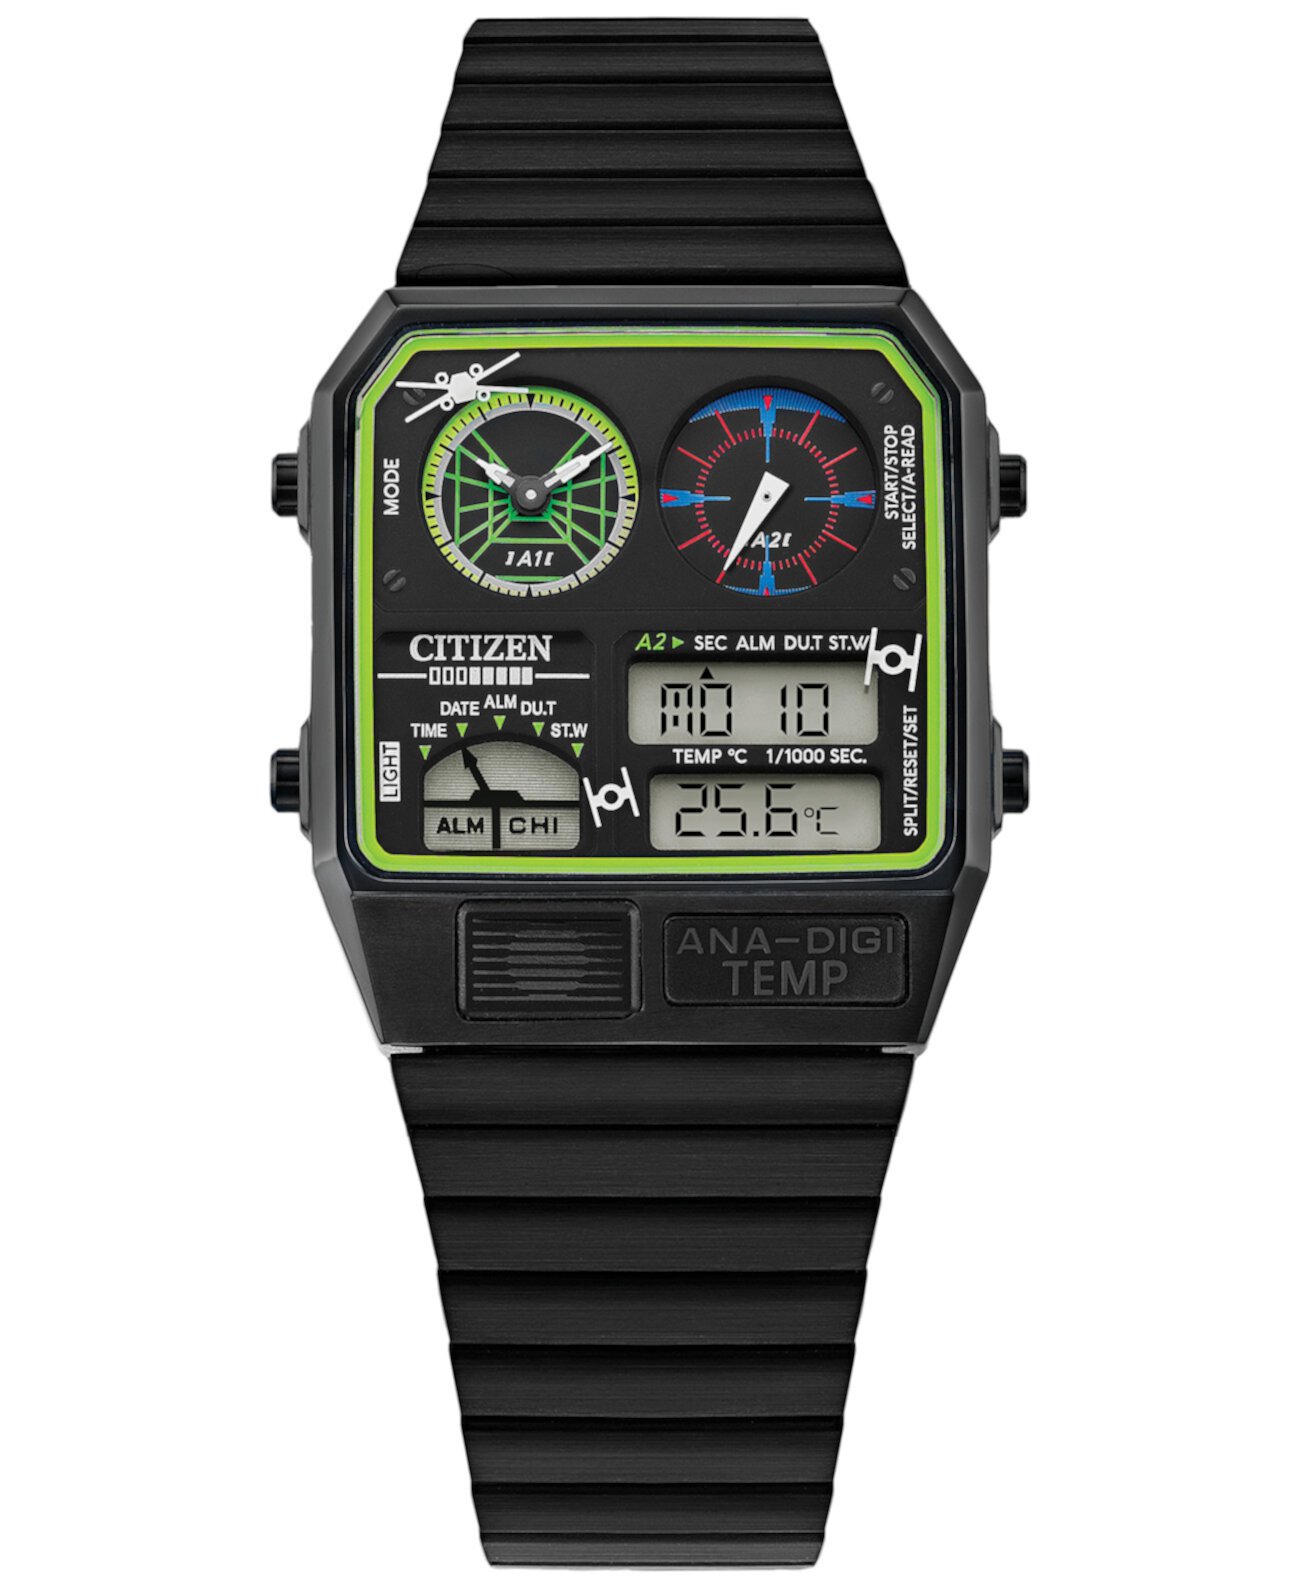 Мужские аналогово-цифровые часы Star Wars с черным браслетом из нержавеющей стали 33 мм Citizen